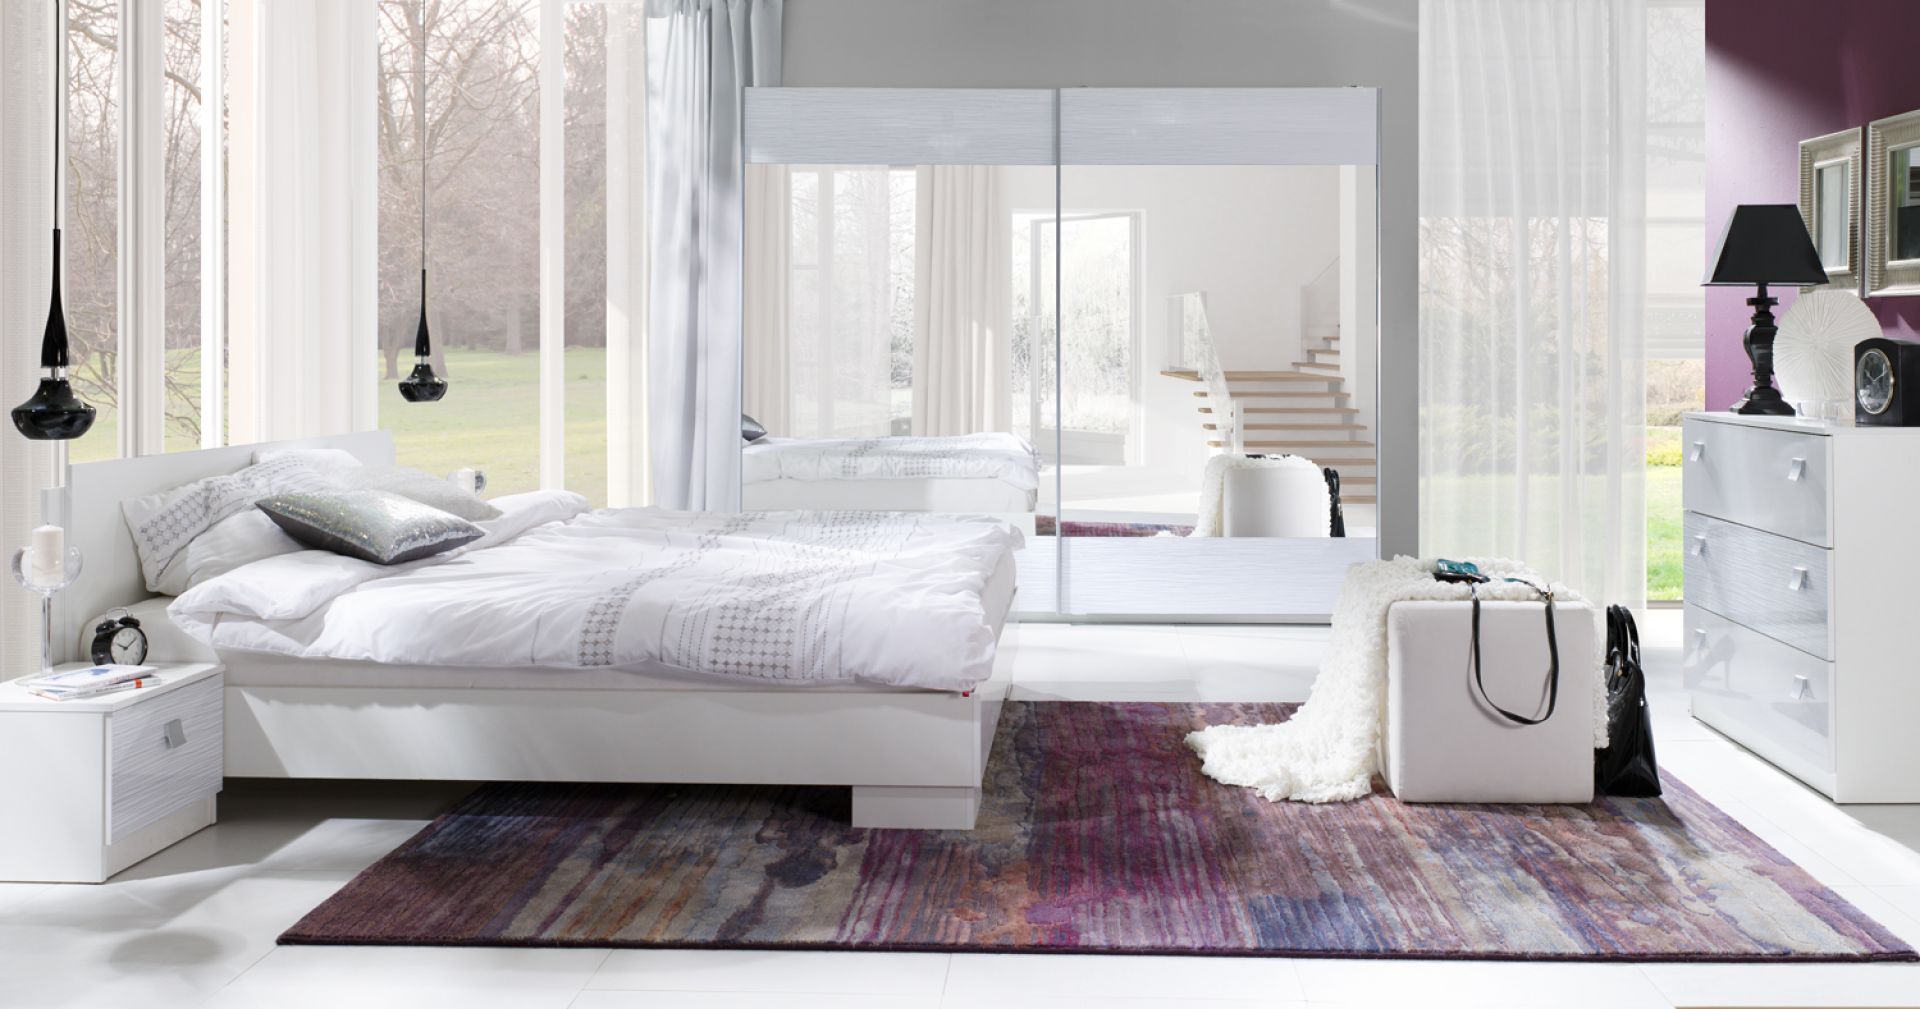 Sypialnia Lux  stripes firmy Maridex. Białe polyskujace meble w wersji total look to świetne uzupelnienie wnętrza sypialni. Fot. Maridex